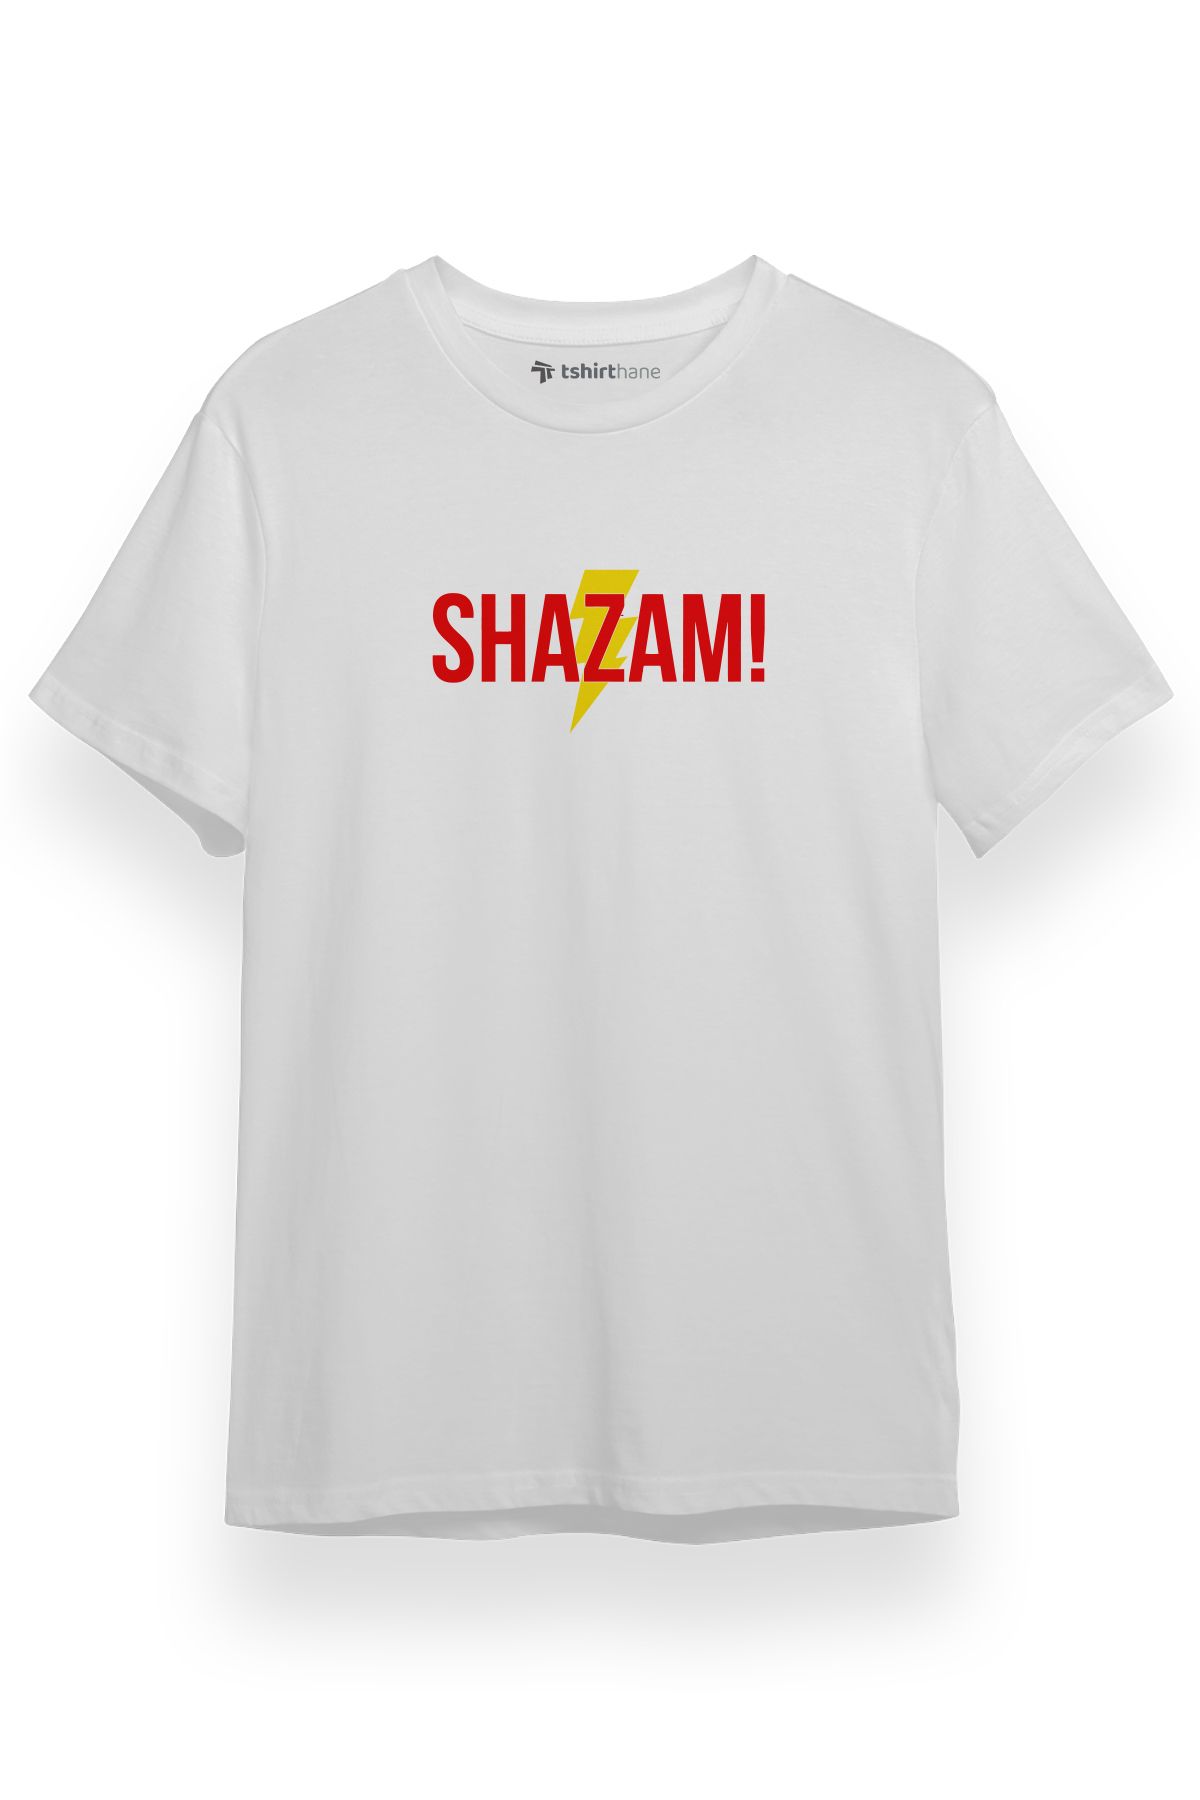 Tshirthane Shazam Lightning Logo Beyaz Kısa kol Erkek Tshirt